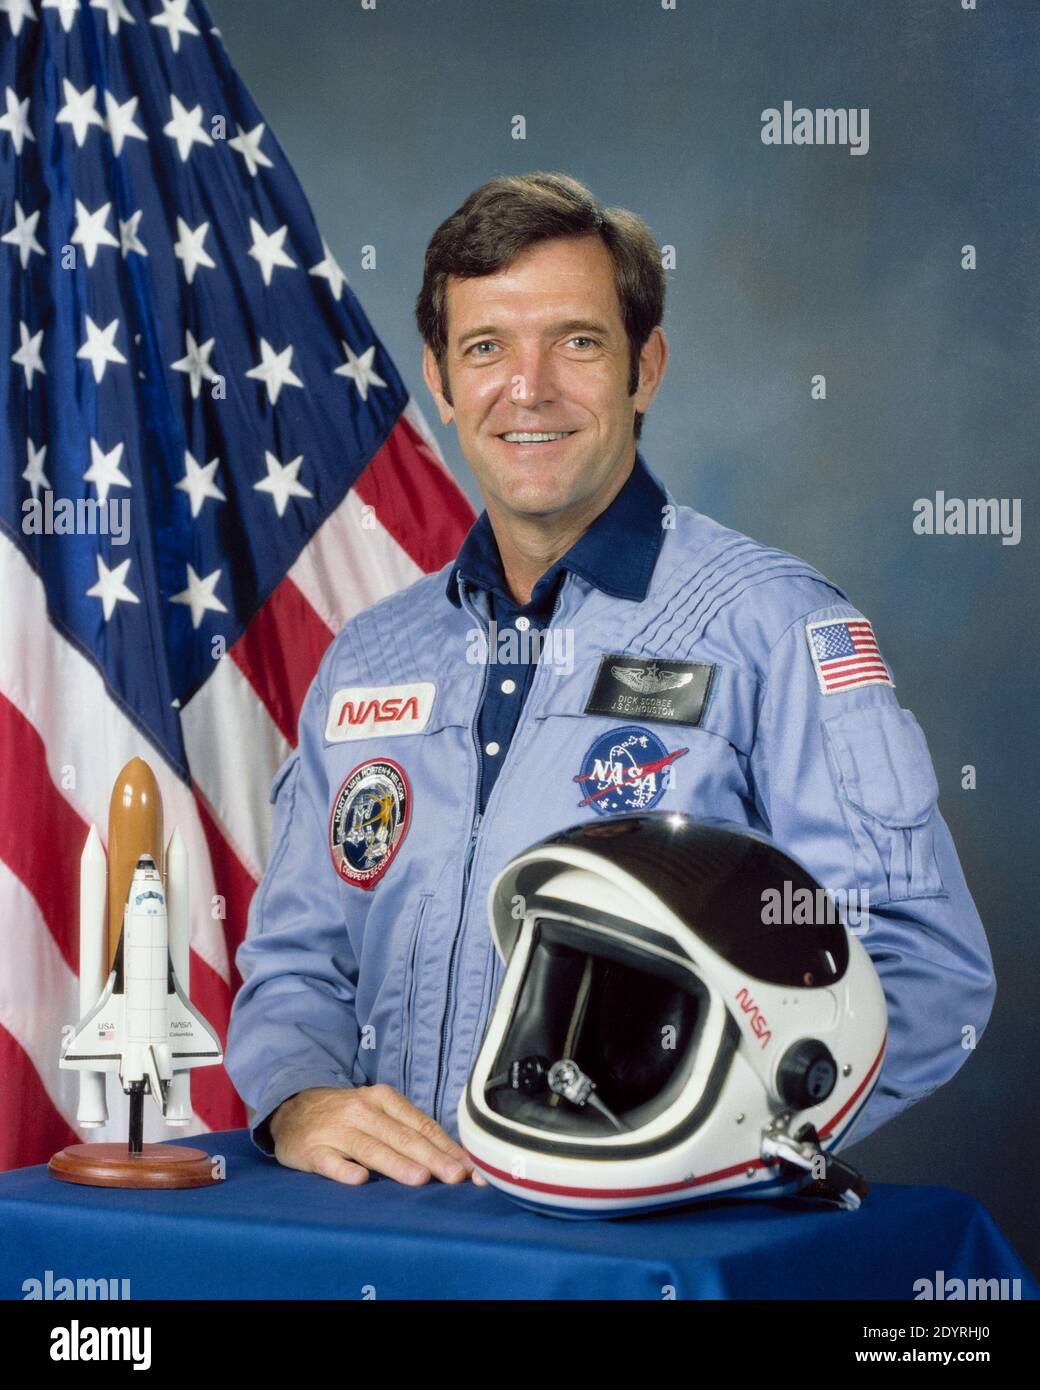 Francis Richard Scobee (19 mai 1939 – 28 janvier 1986) pilote, ingénieur et astronaute américain. Il a été tué alors qu'il commandait la navette spatiale Challenger en 1986, qui a subi une défaillance catastrophique lors du lancement de la mission STS-51-L. Banque D'Images